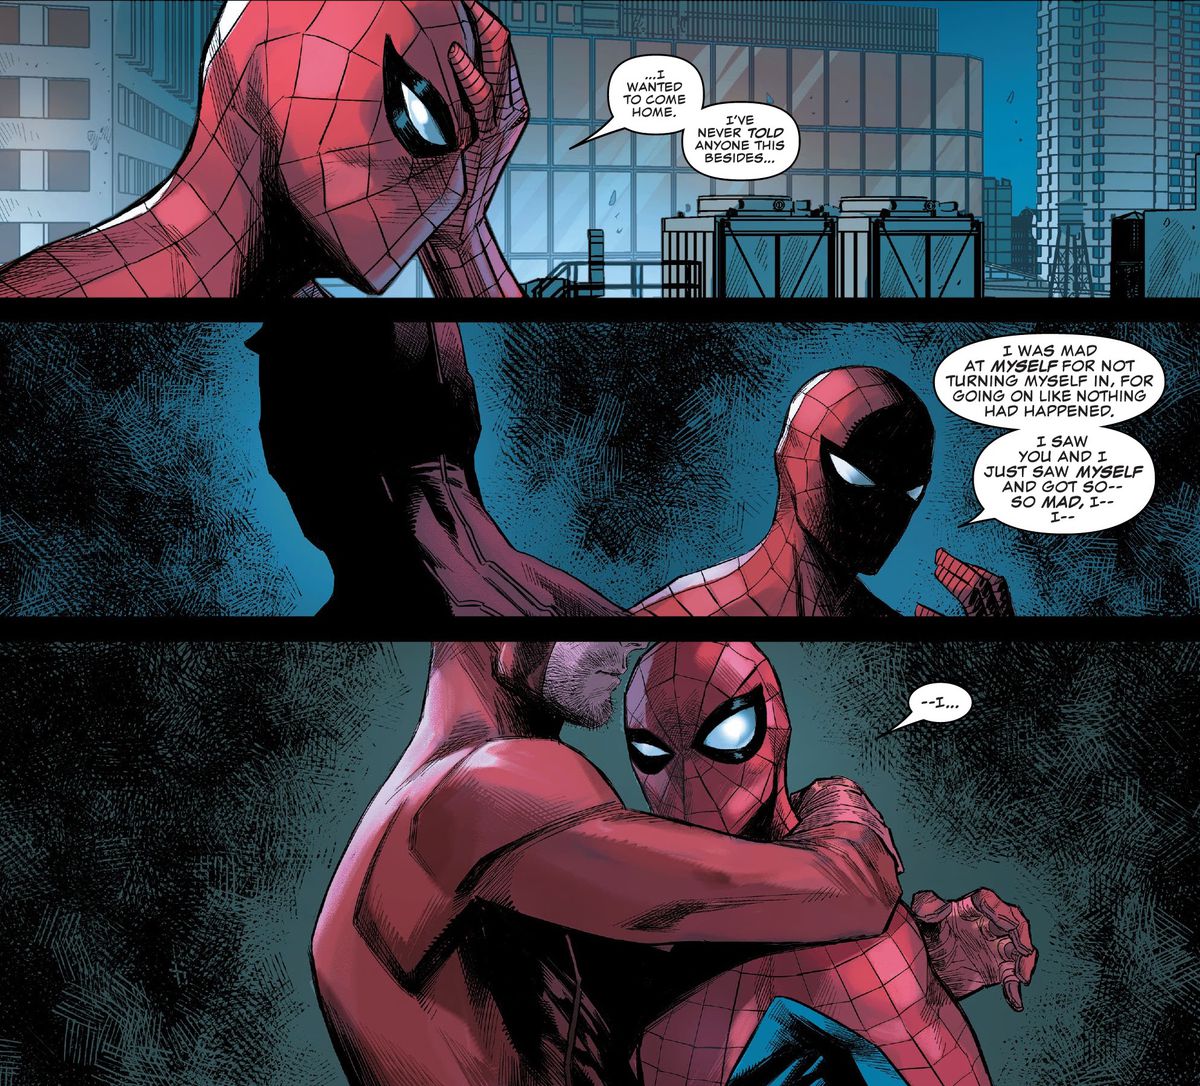 ”Jag var arg på mig själv för att jag inte lämnade in mig. För att fortsätta som ingenting hade hänt. Jag såg dig och jag såg mig själv och blev så - så arg, jag - jag - säger Spider-Man till Daredevil i Daredevil # 23, Marvel Comics (2020). Daredevil kramar honom. 